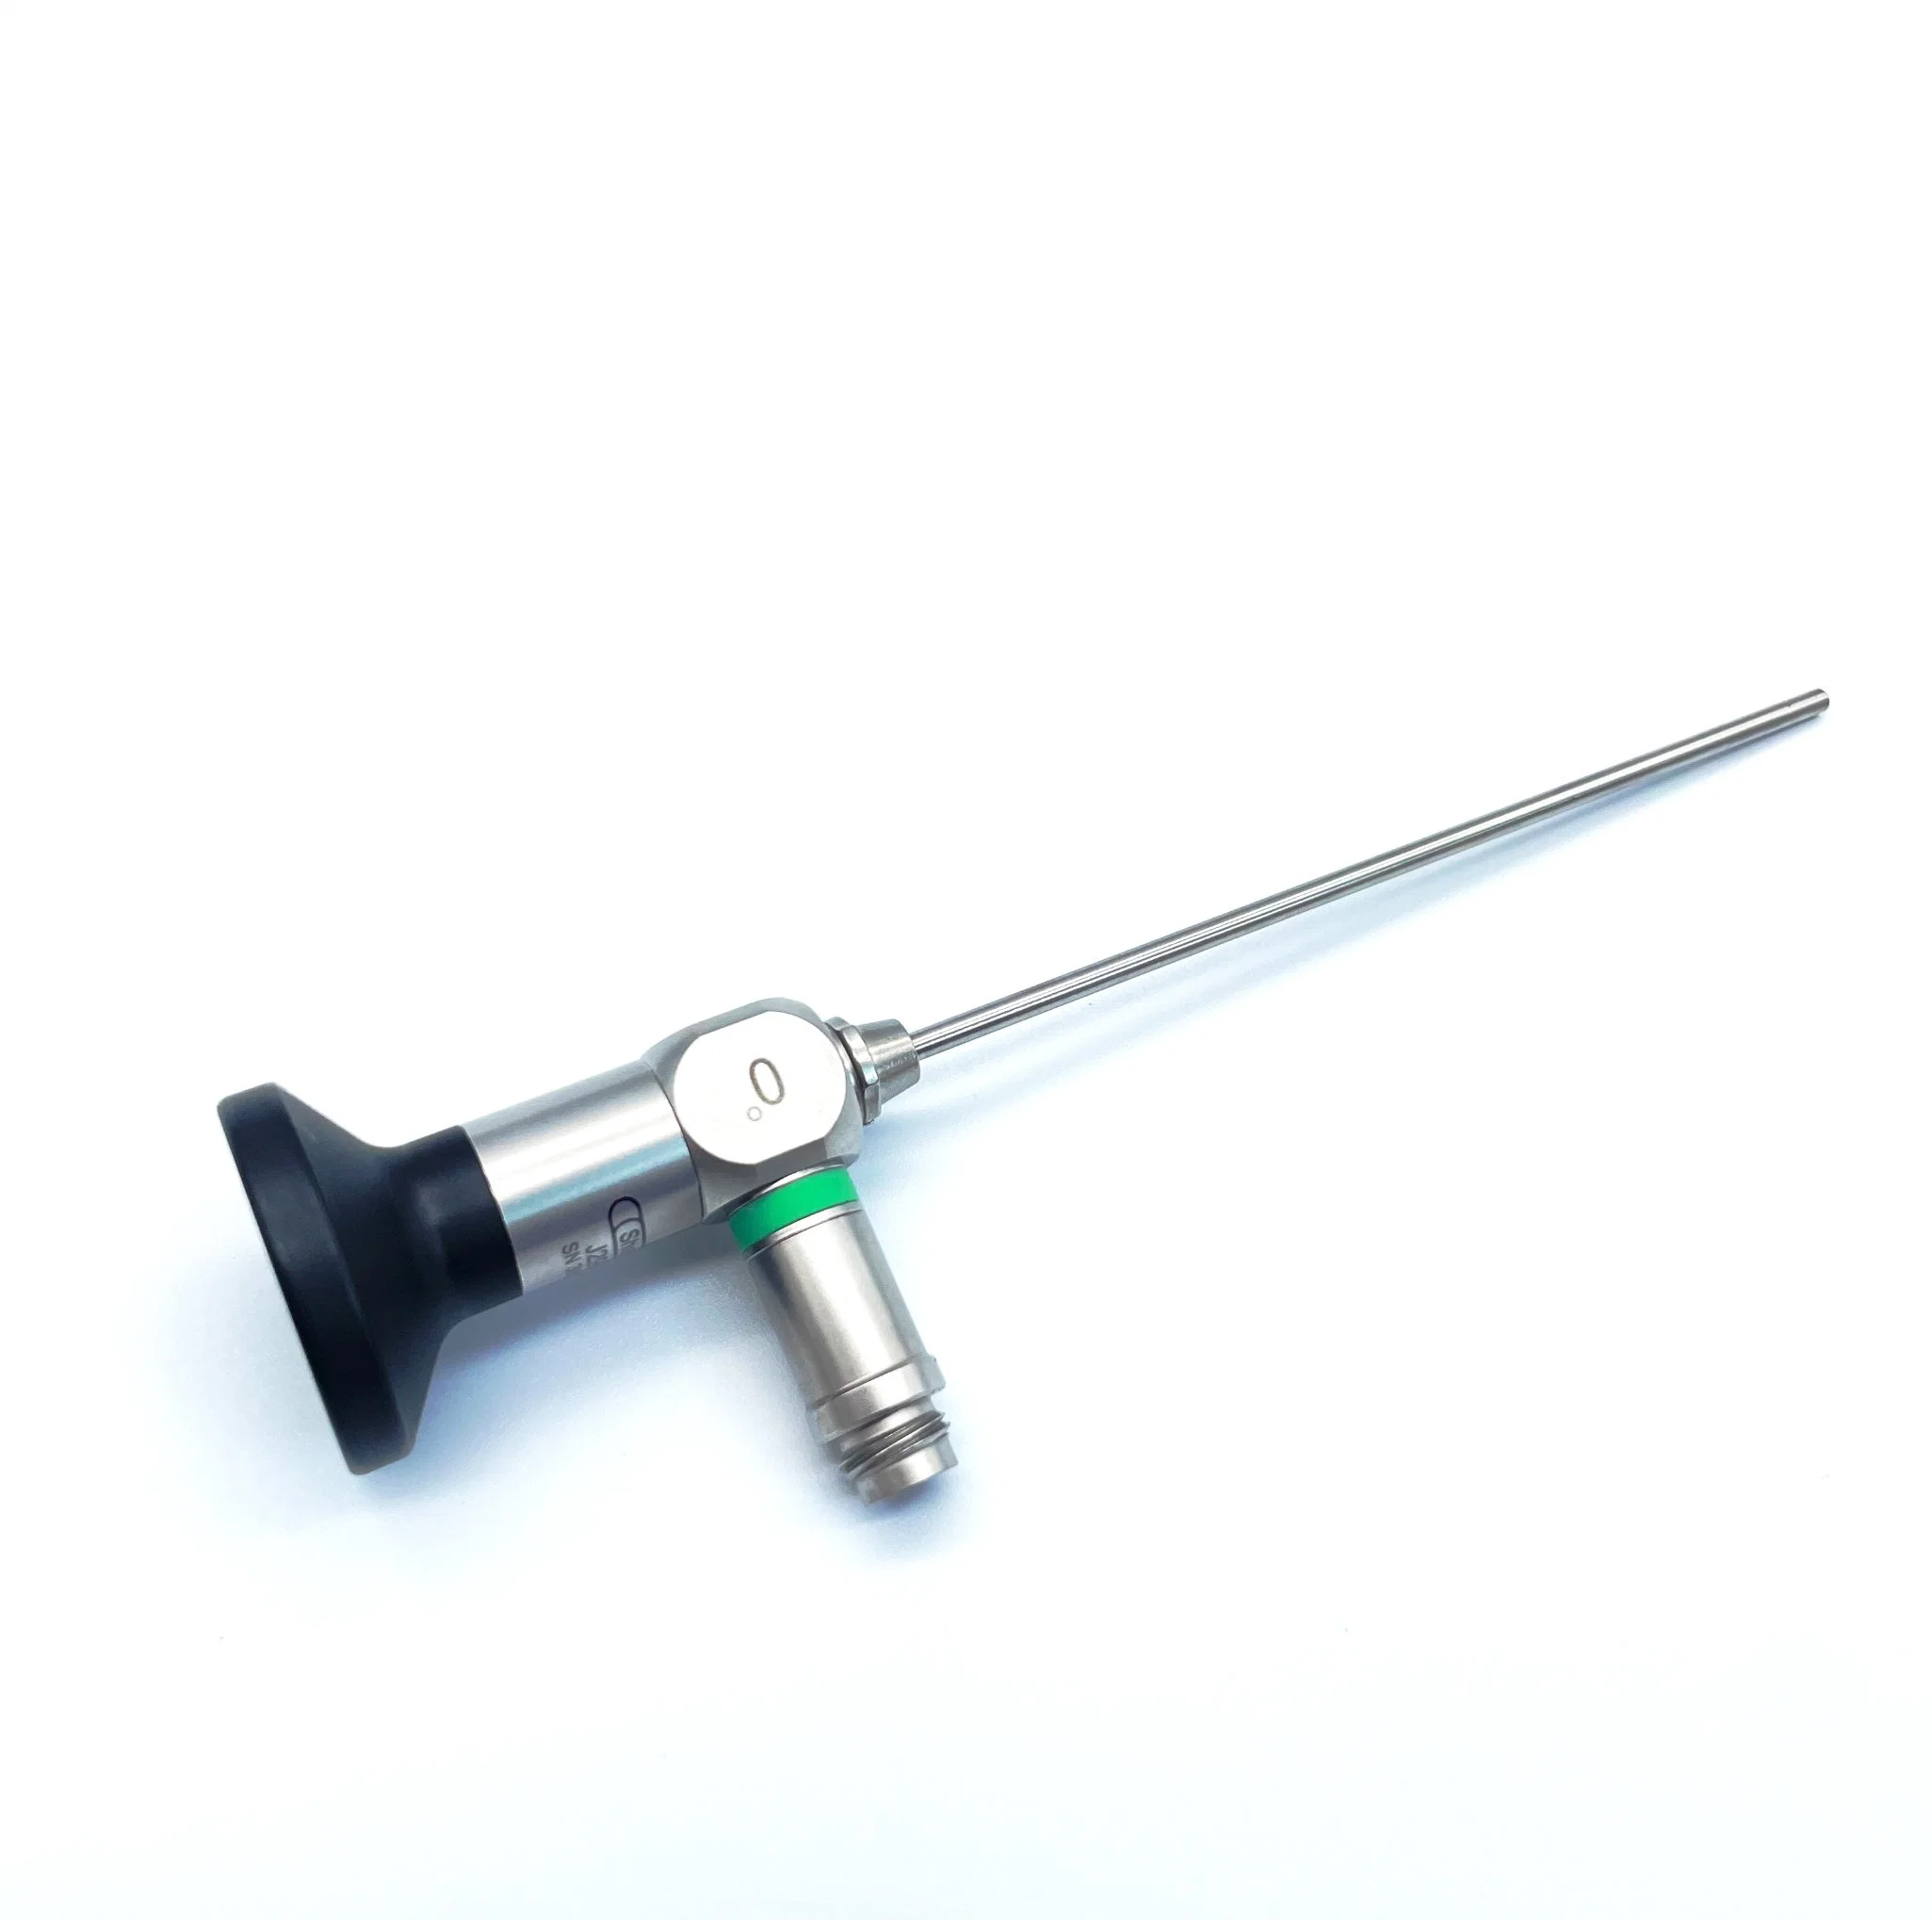 Otoscopio 2,7mm 110mm Ent rígido endoscopio médico con Marca CE